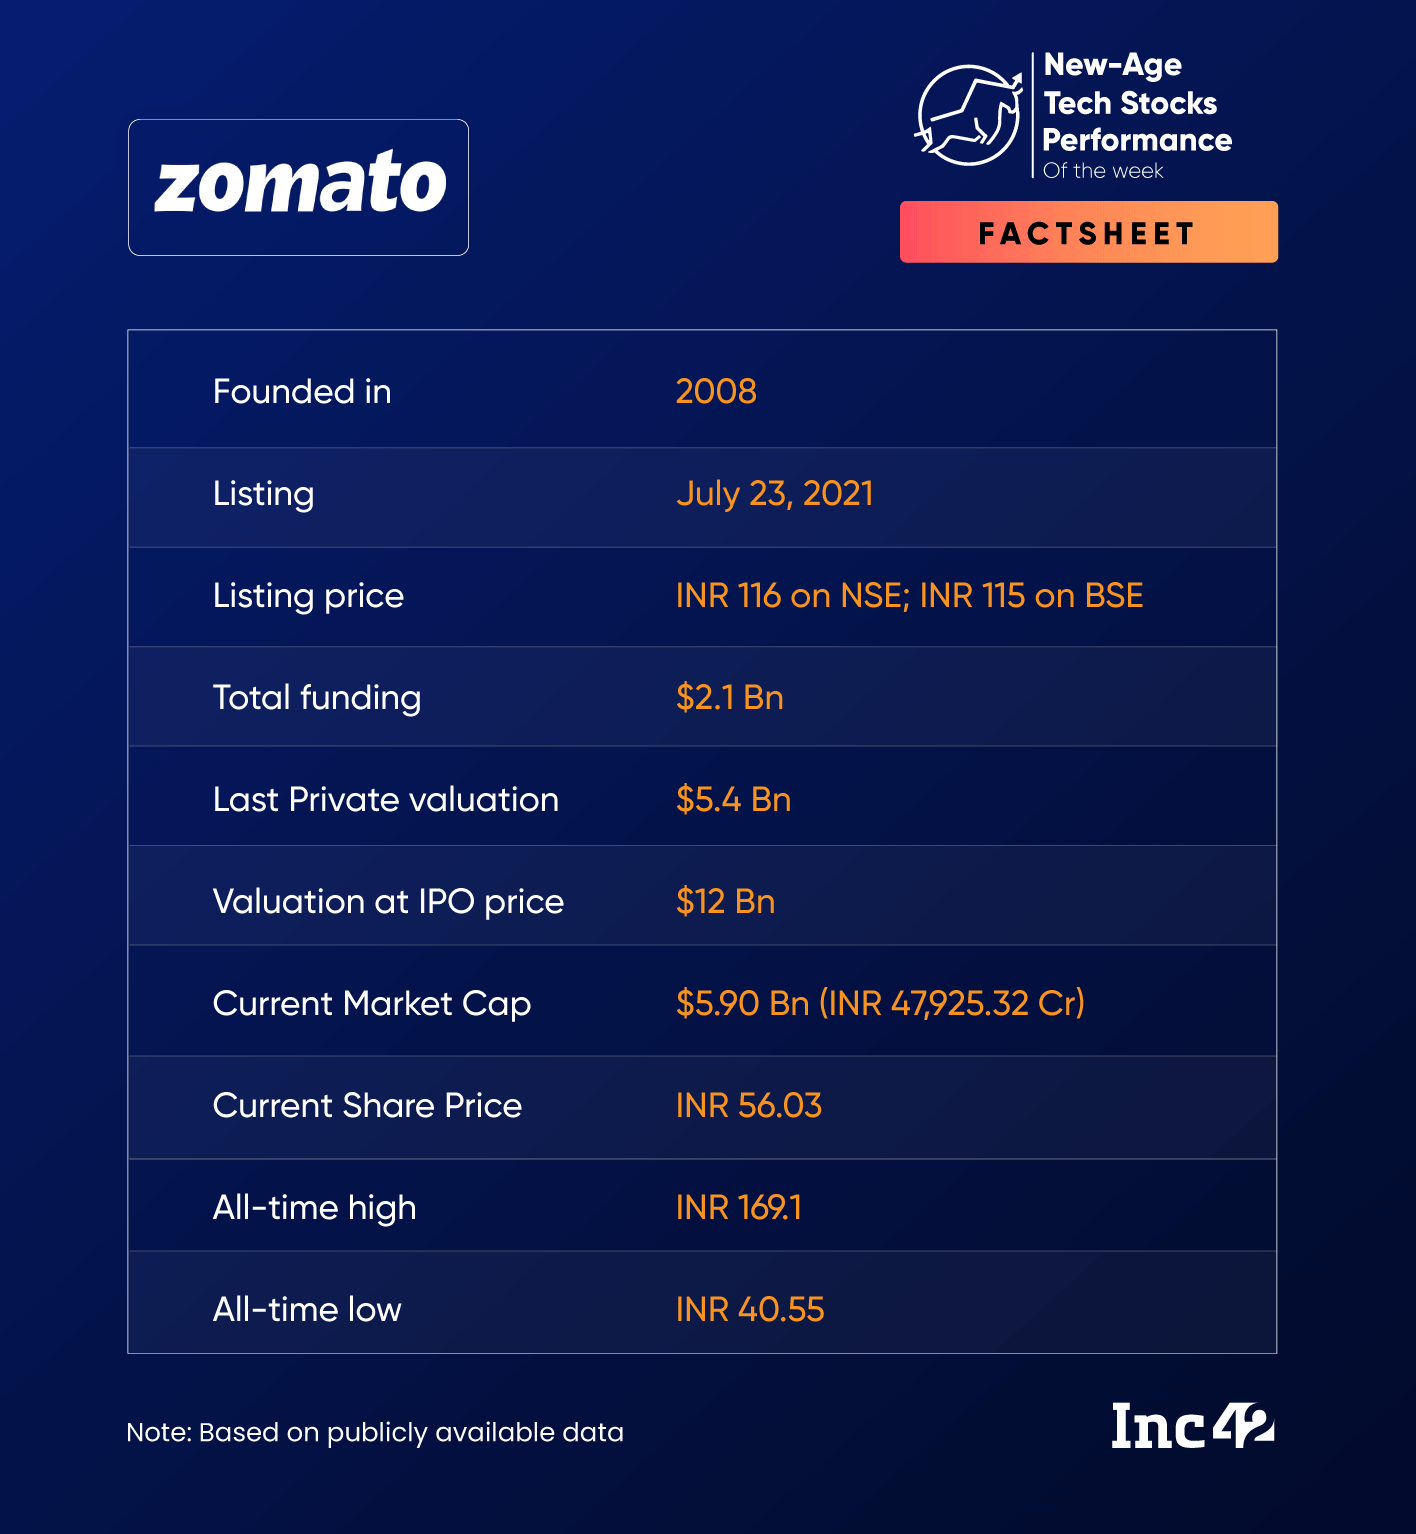 Zomato’s Cost-Cutting Initiatives Continue